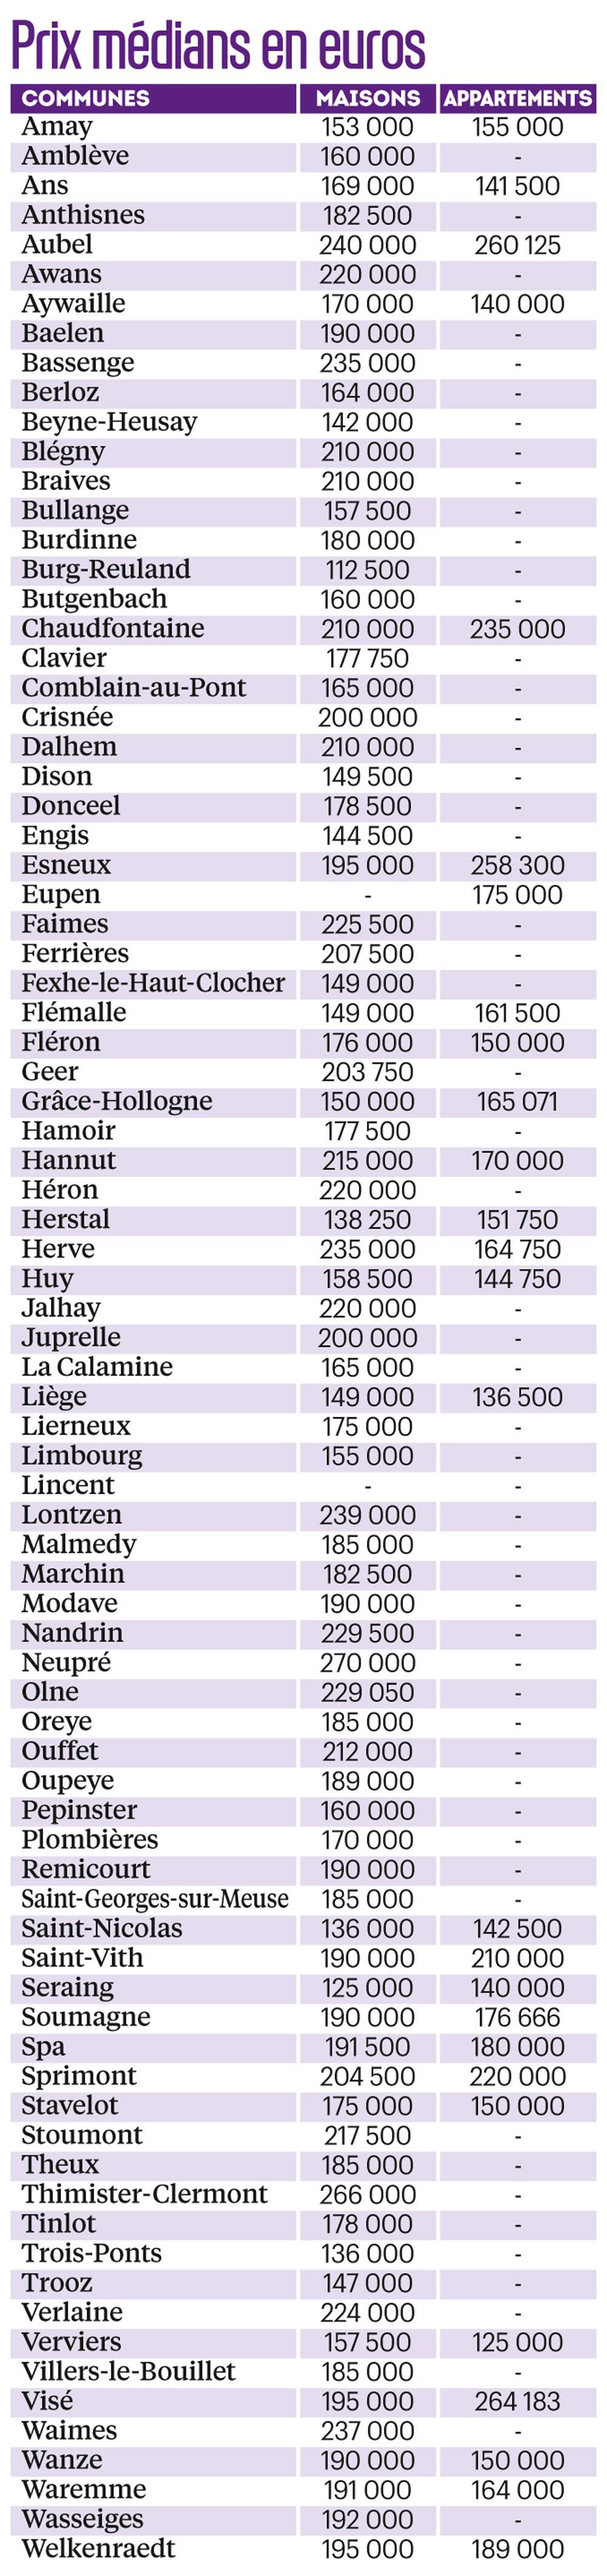 En province de Liège, des appartements plus chers que des maisons